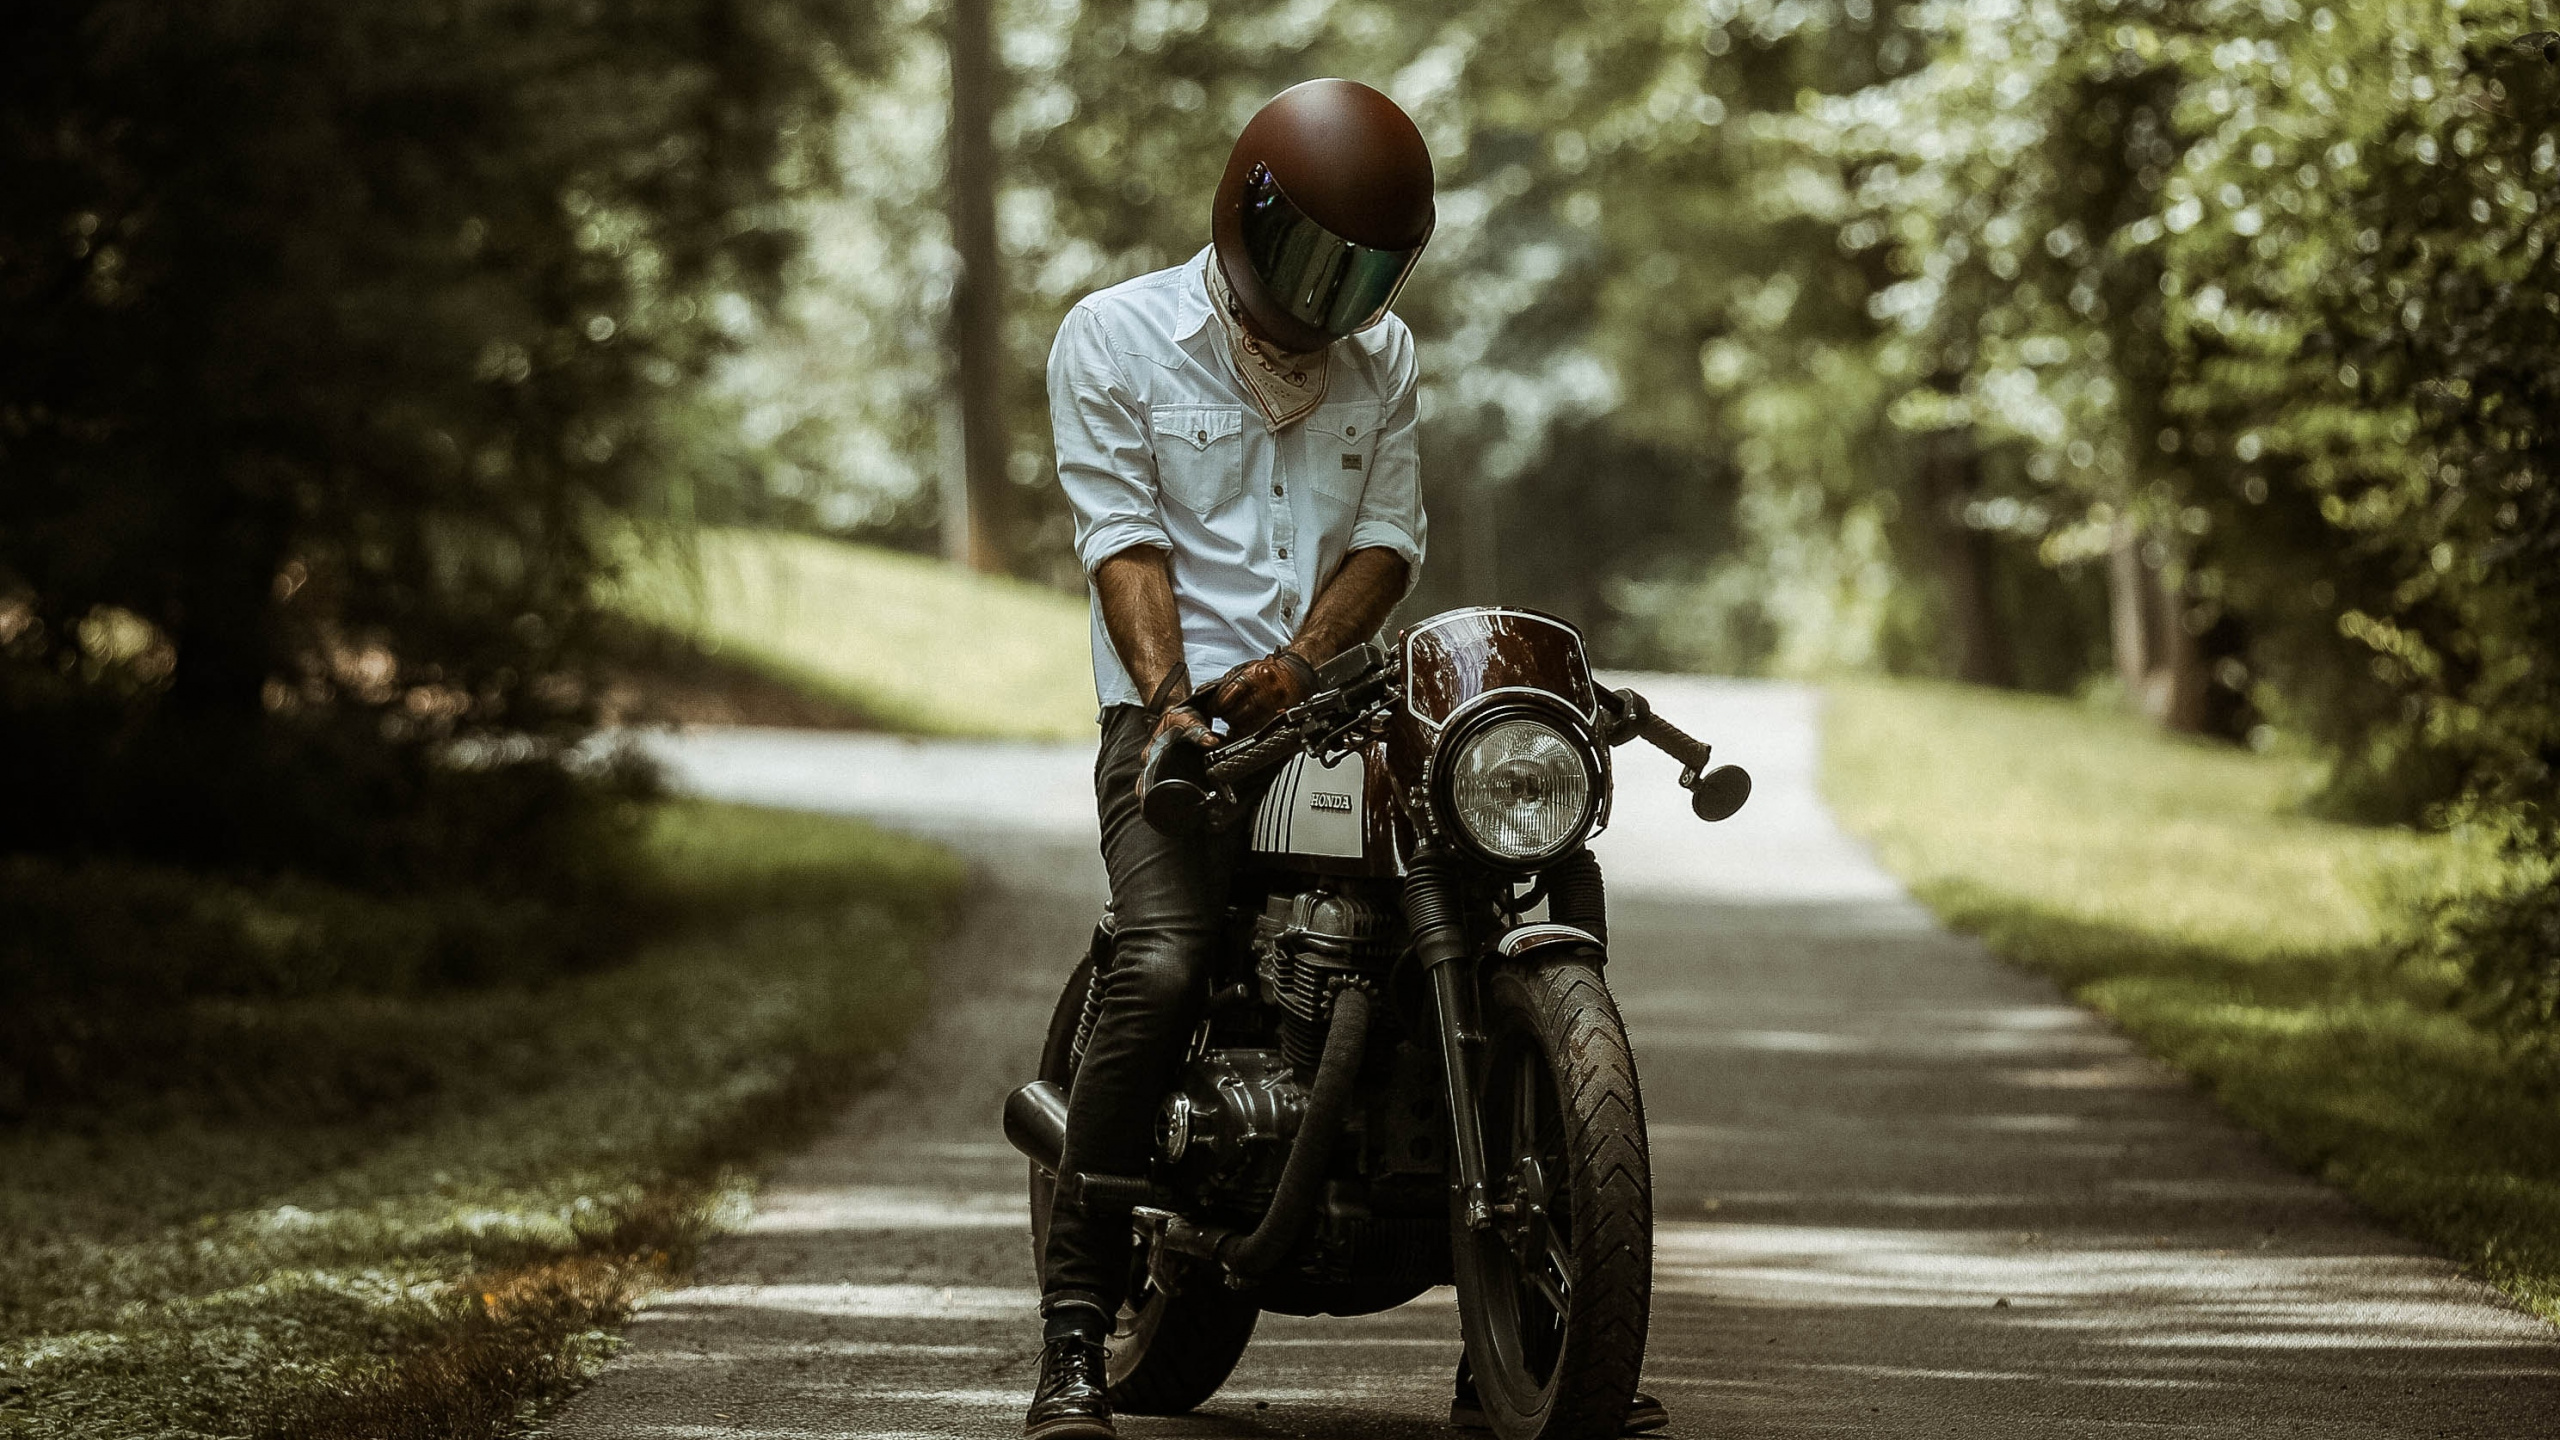 摩托车头盔, 草, 阳光, 坐, 定义的摩托车 壁纸 2560x1440 允许